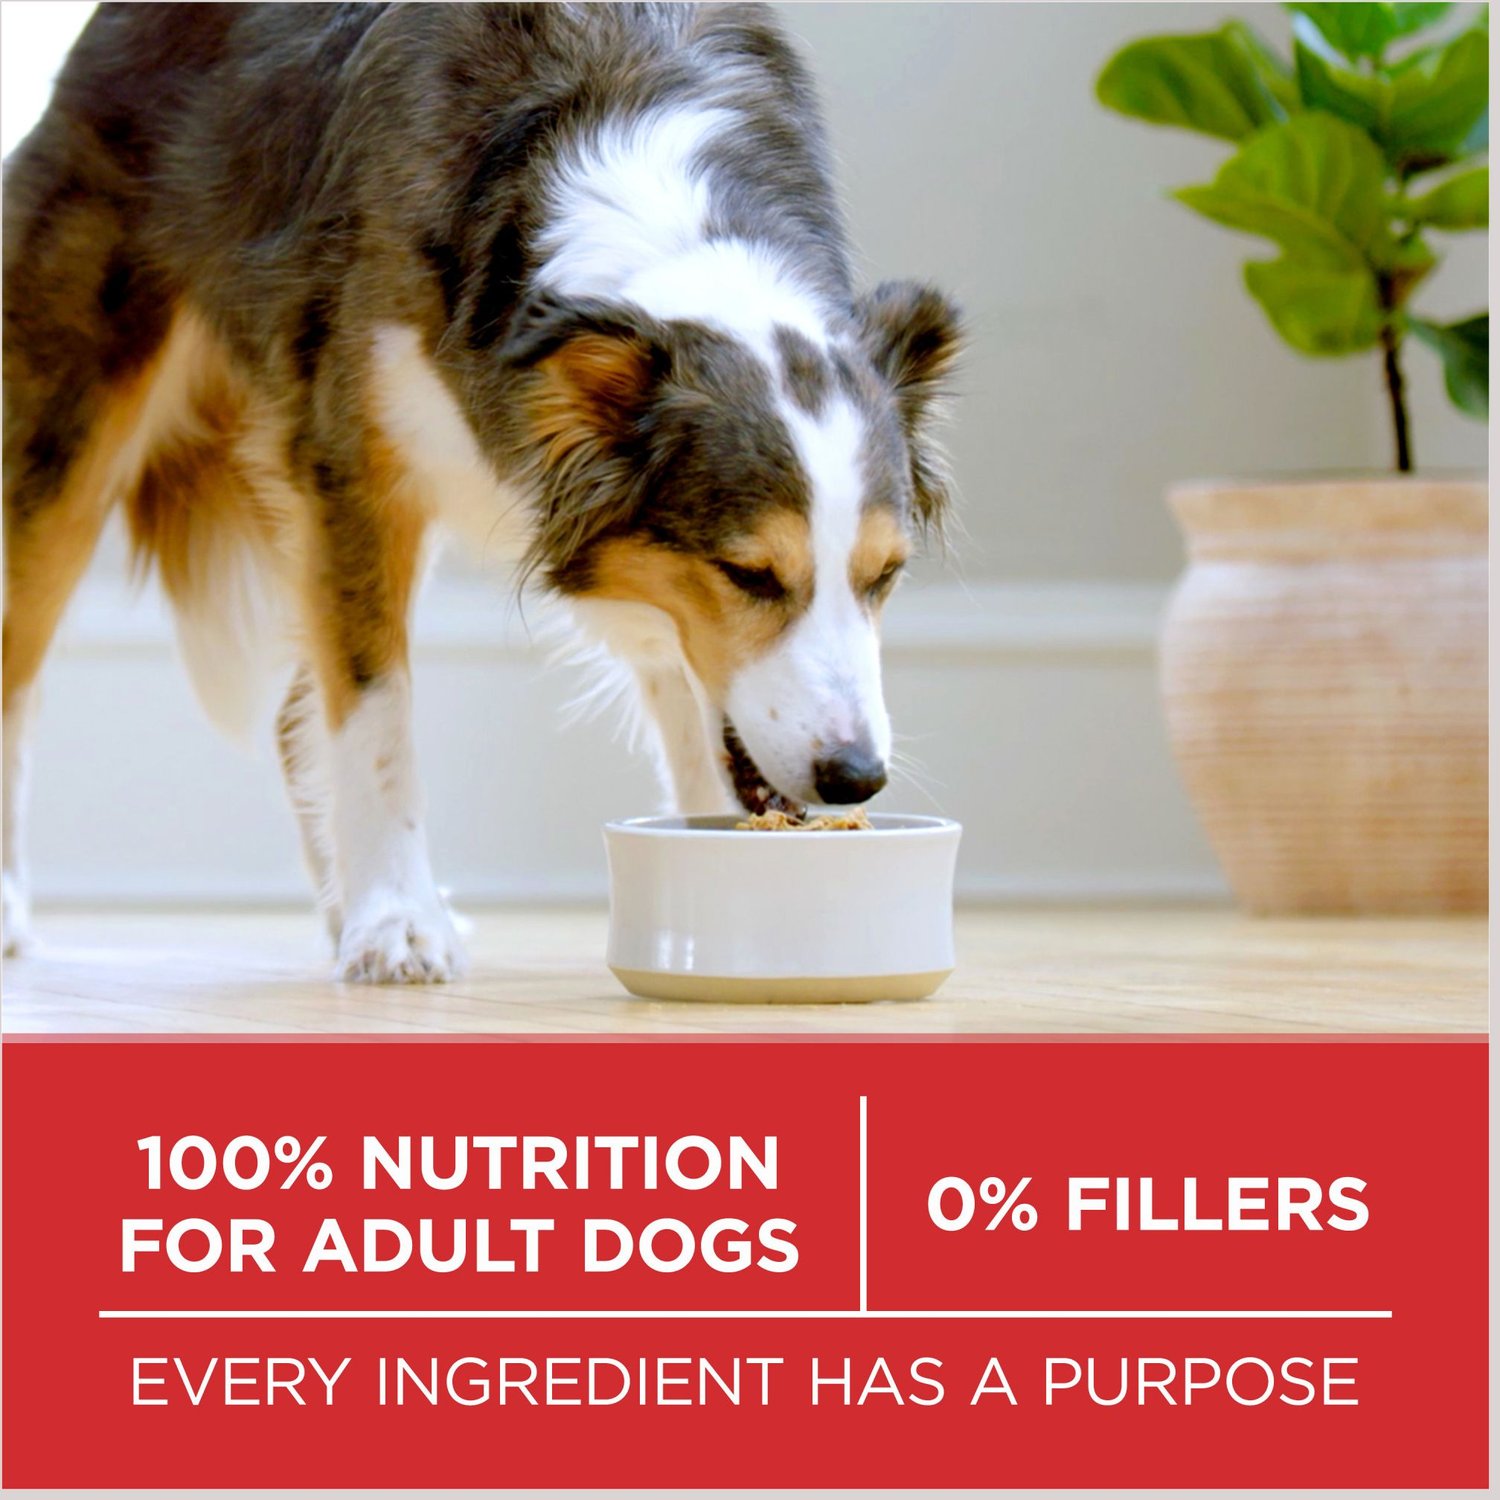 beneful dog food ingredients label